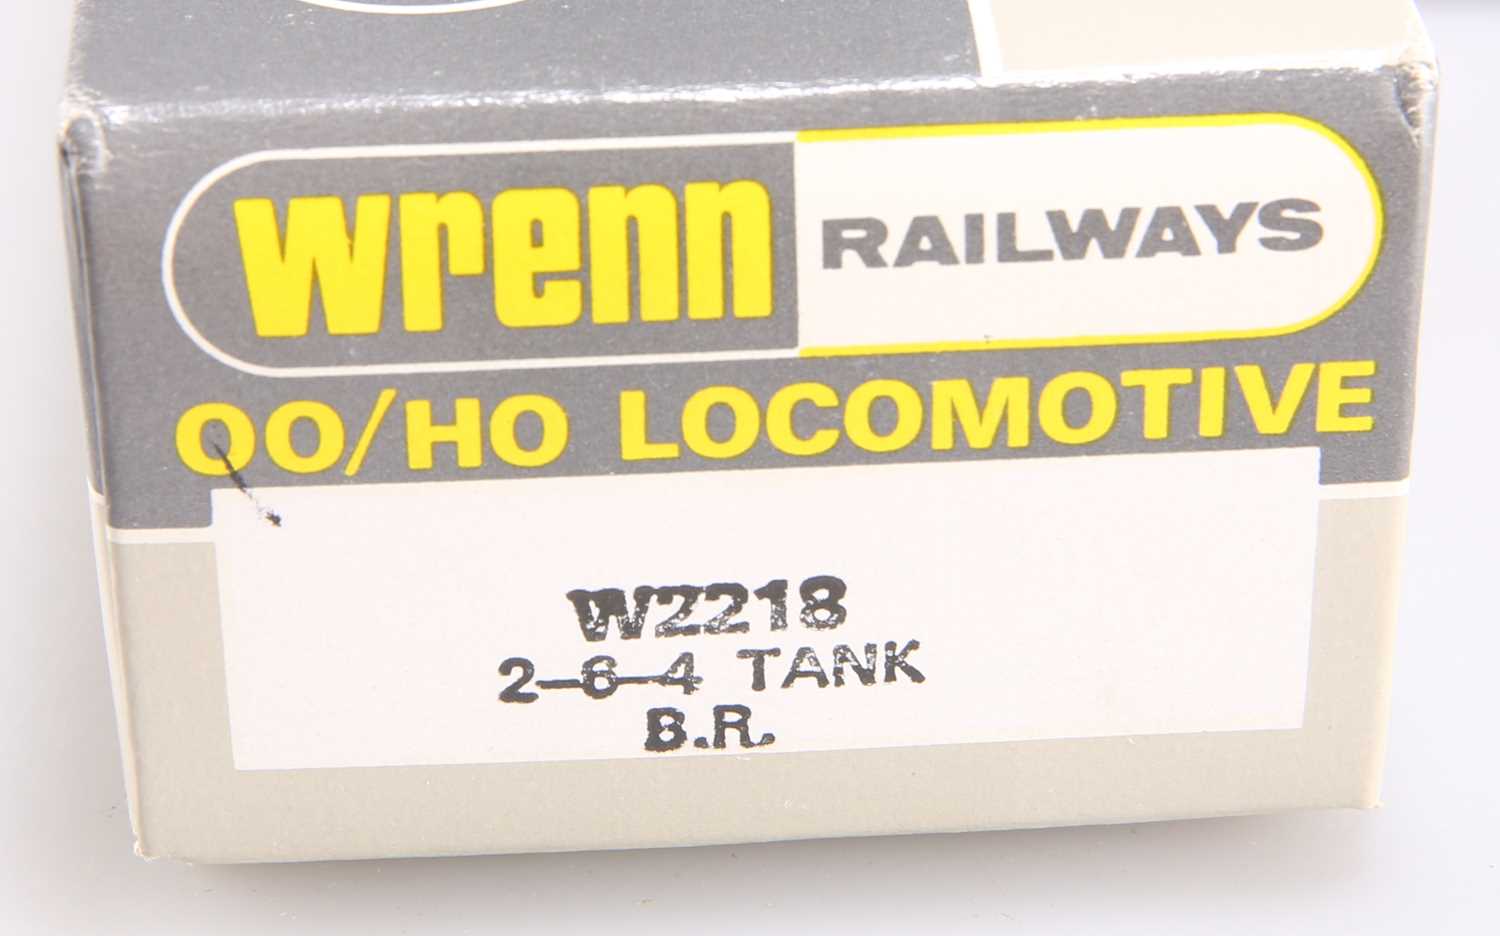 A WRENN W2218 2-6-4- TABK B.R. - Image 2 of 2